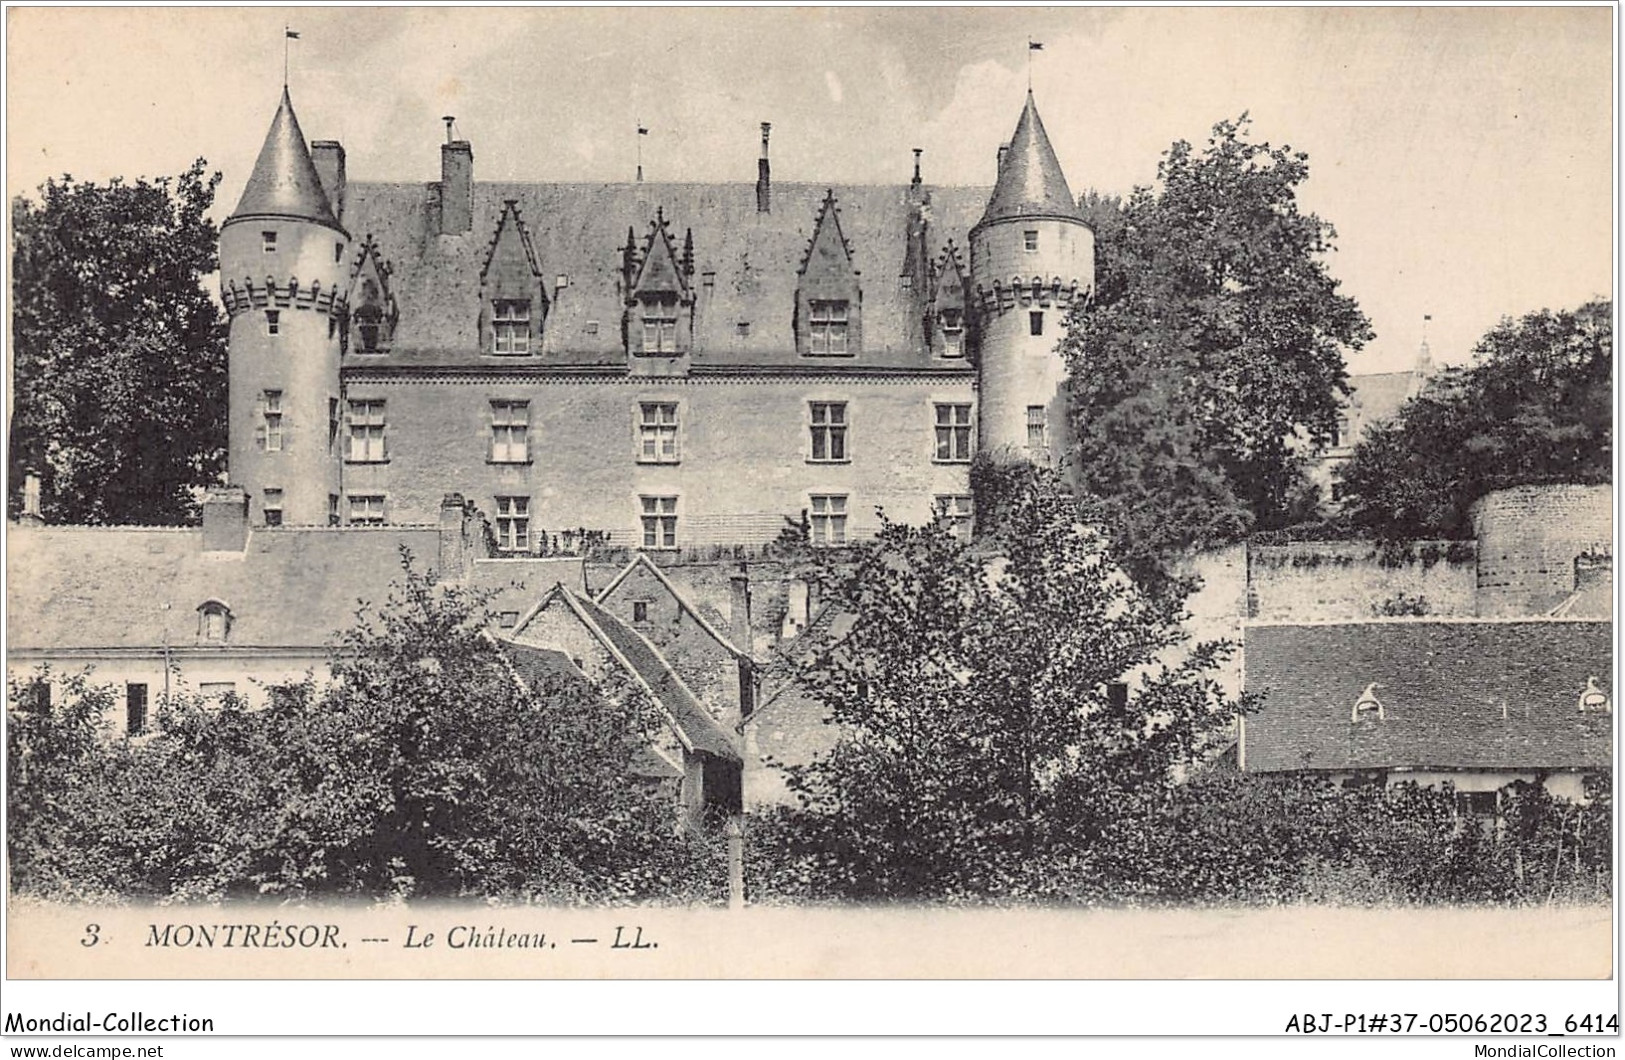 ABJP1-37-0022 - MONTRESOR - Le Chateau - Montrésor